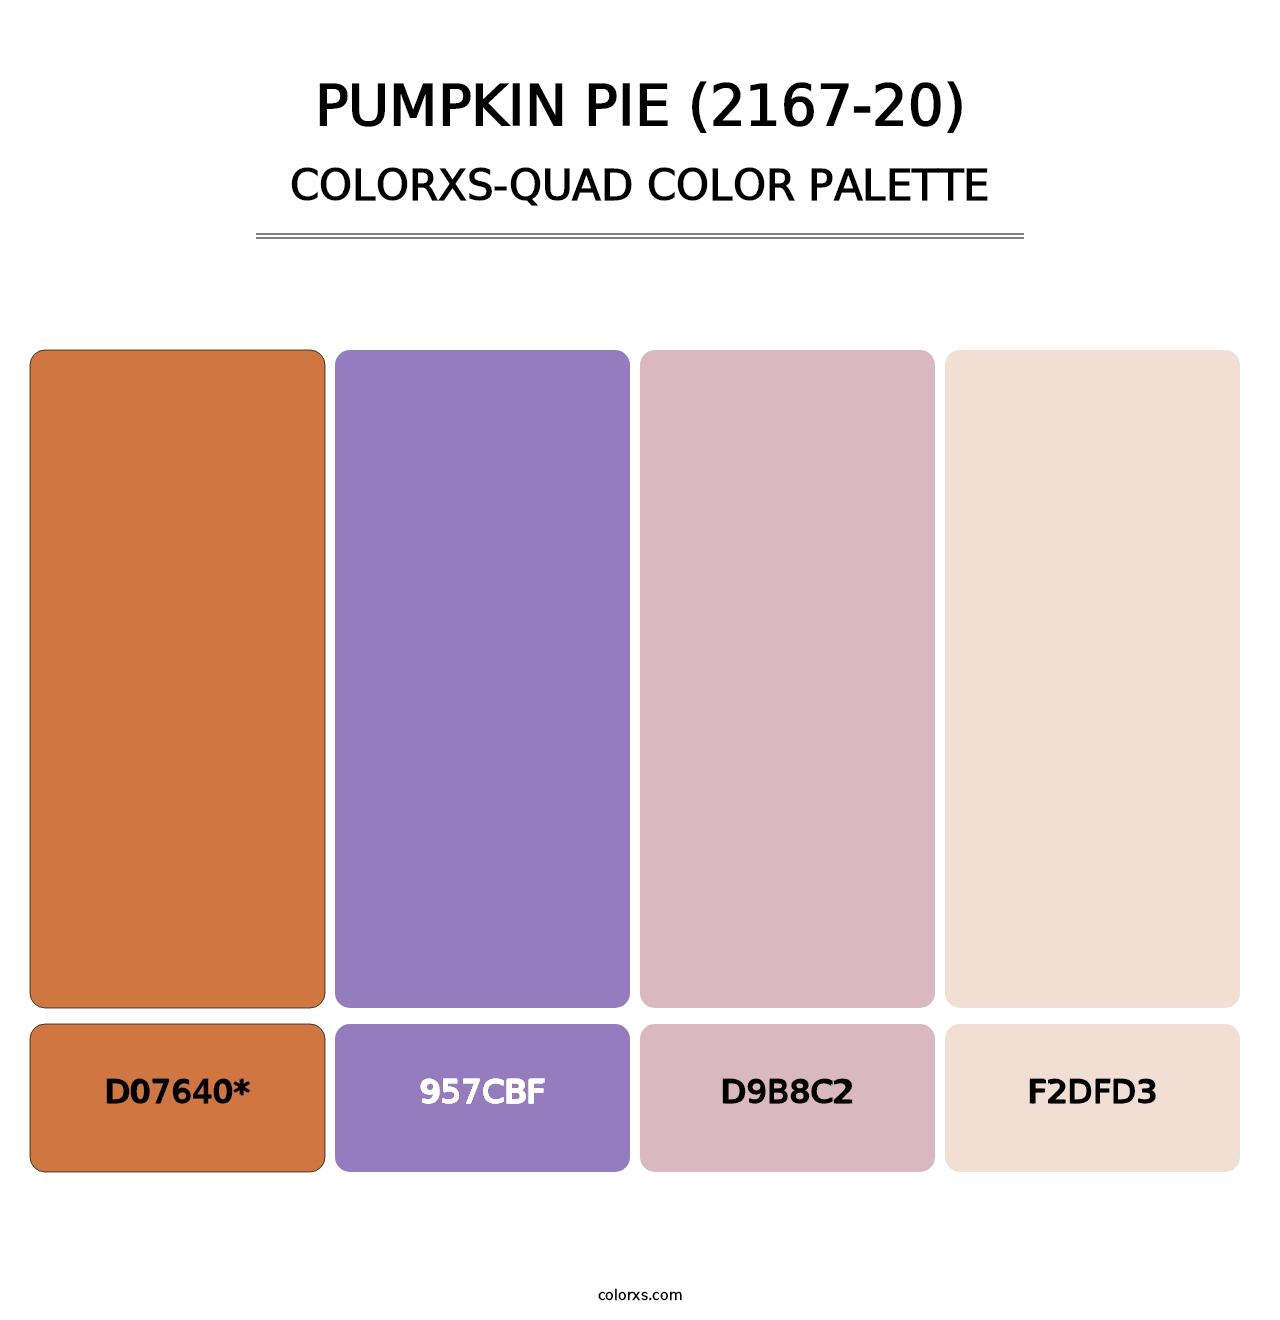 Pumpkin Pie (2167-20) - Colorxs Quad Palette